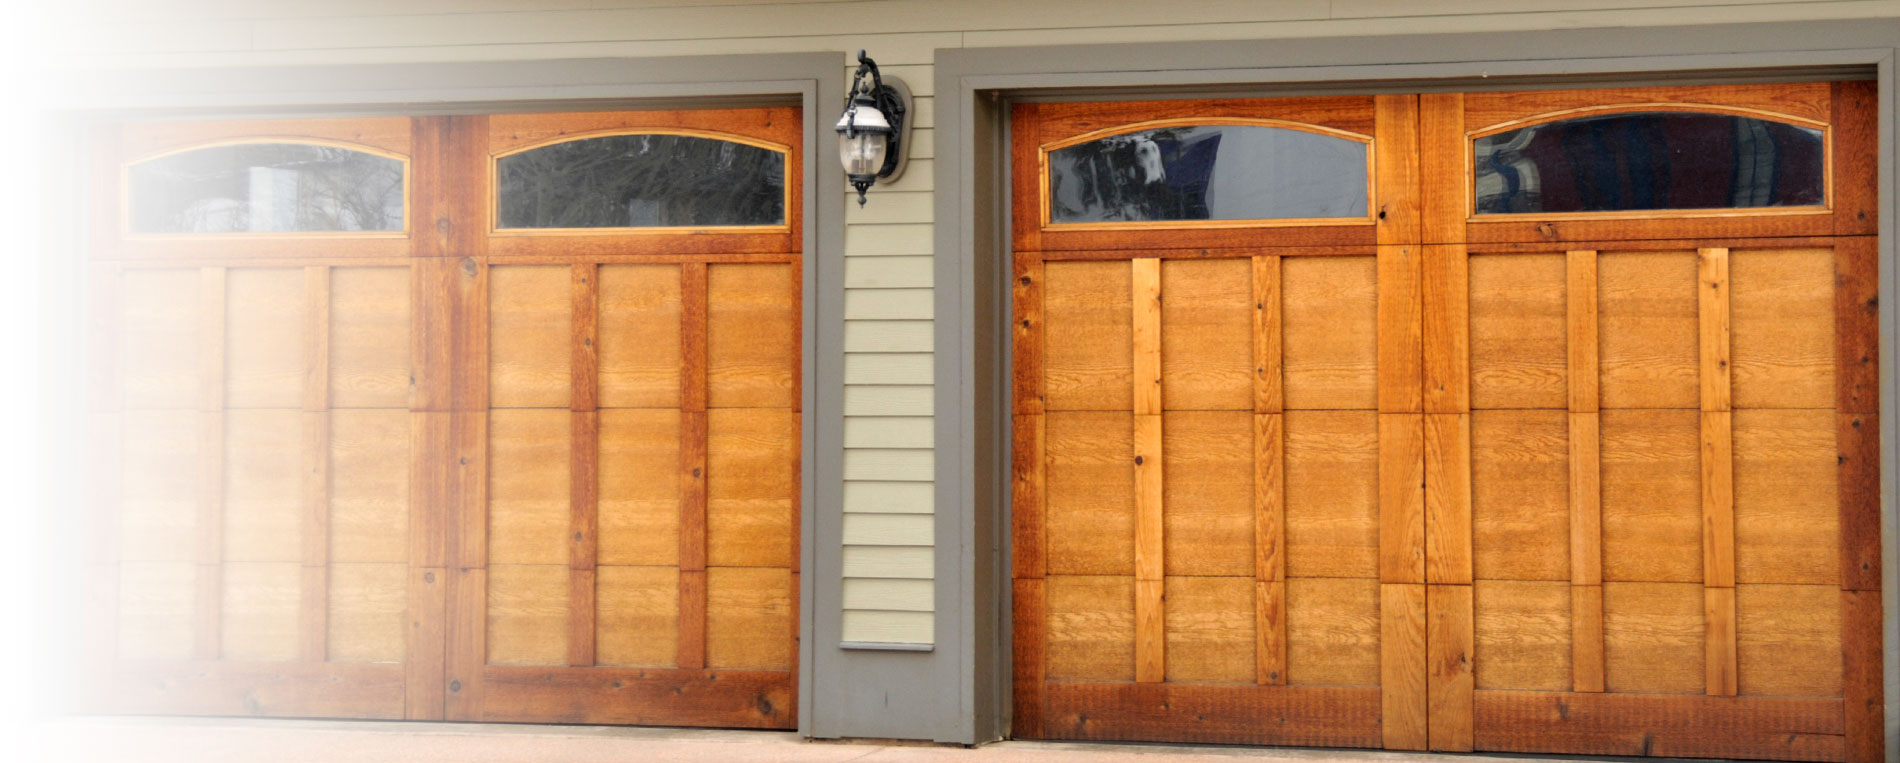 Same-day Hoffman Estates Garage Door Services